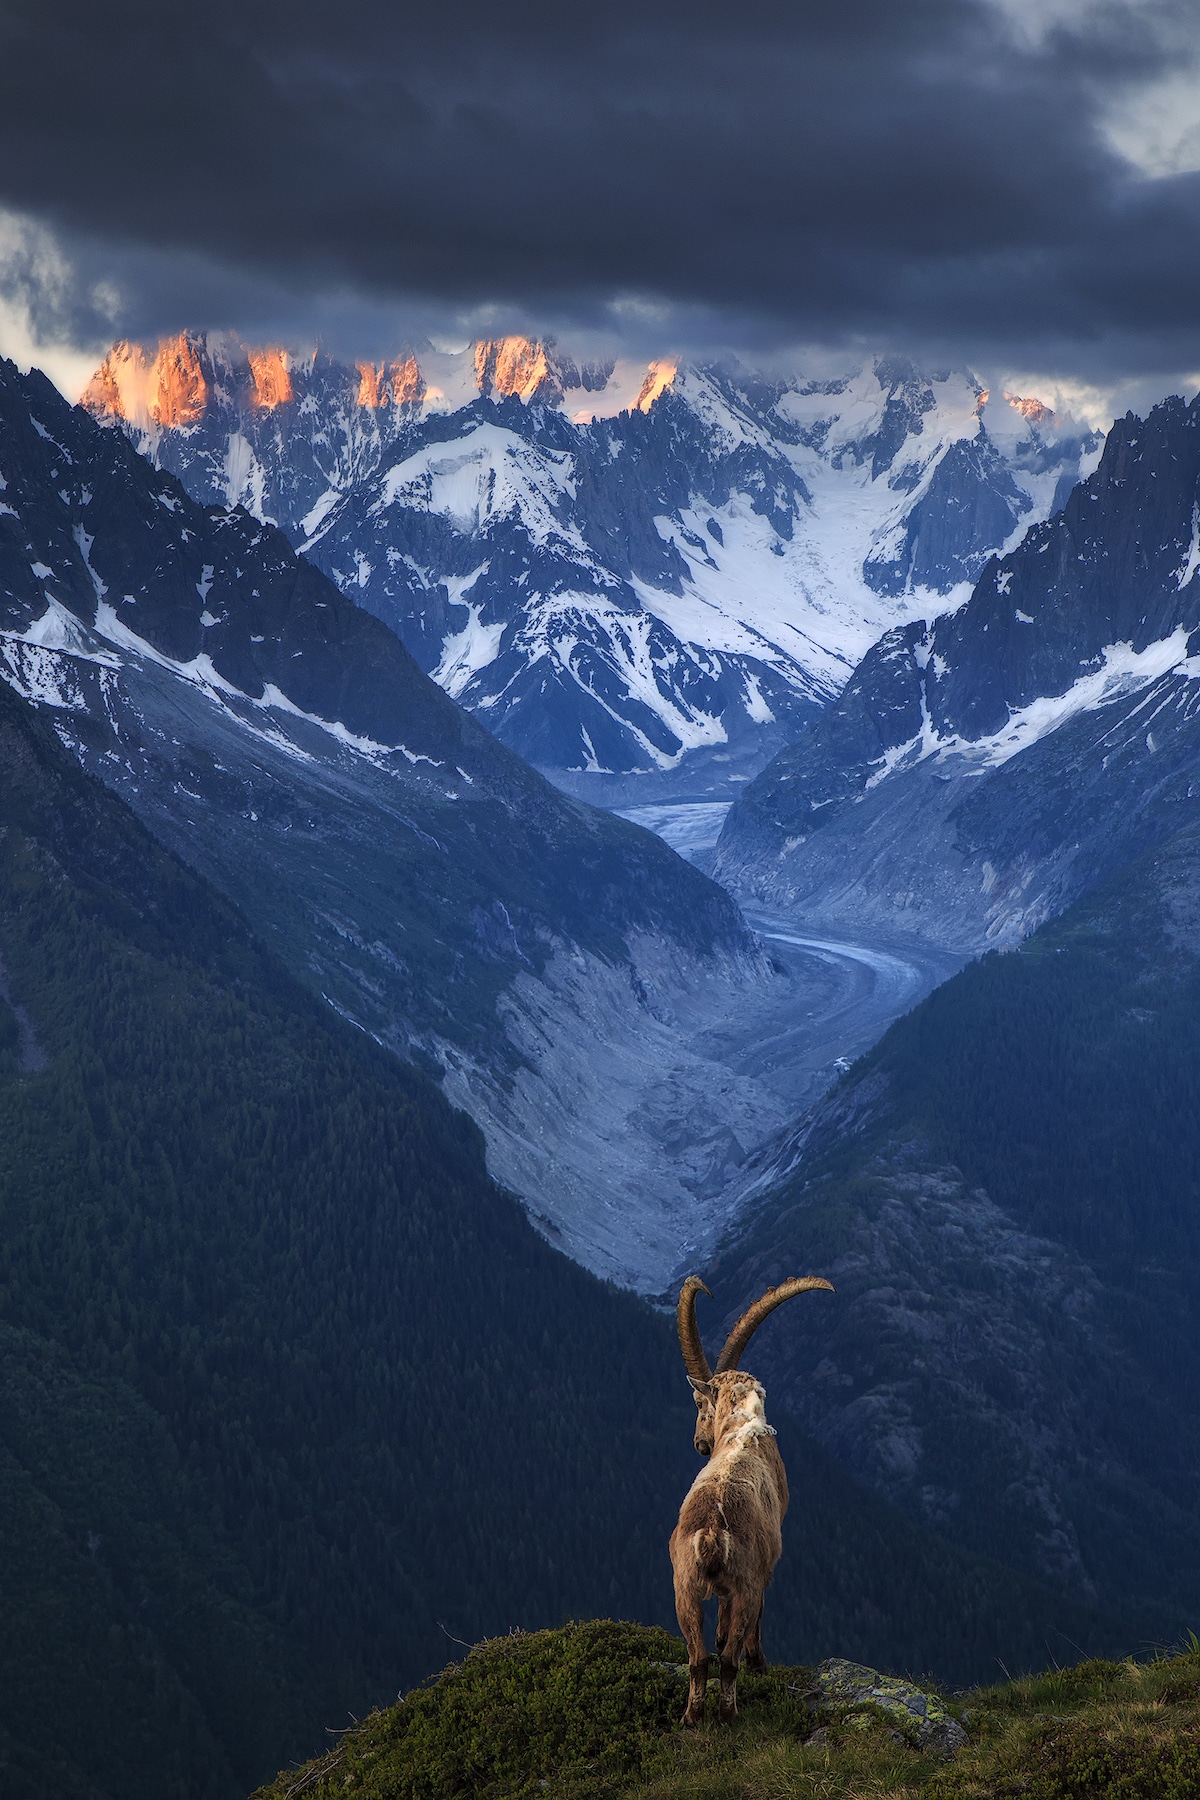 Fotos de paisajes montañosos por Sven Broeckx